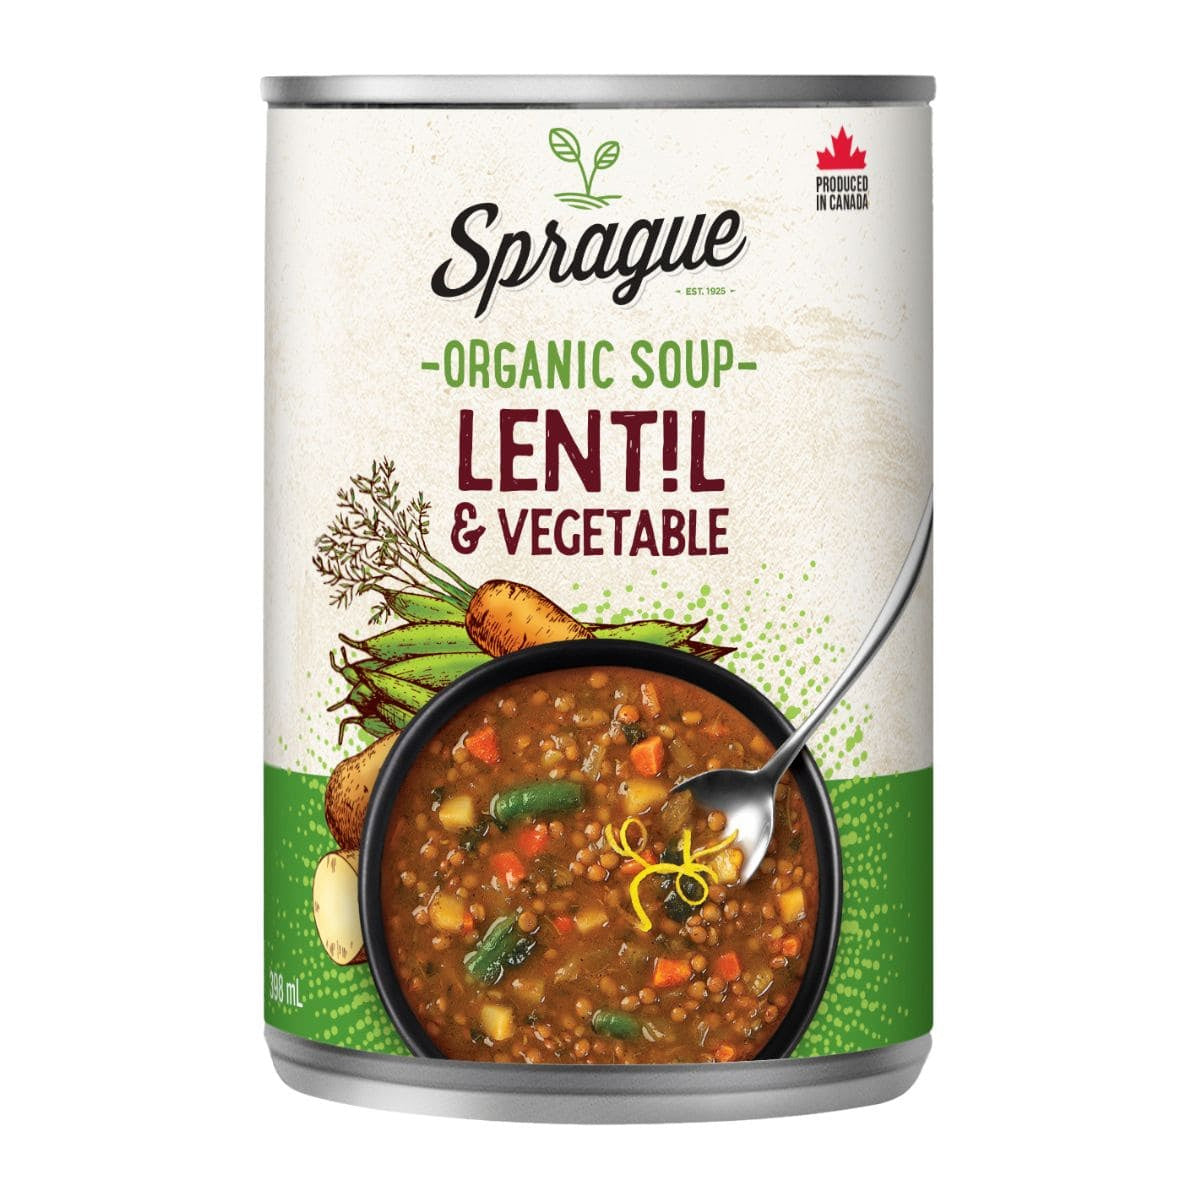 http://veganblackmarket.com/cdn/shop/files/sprague-lentil-veg_1_-min.jpg?v=1695411984